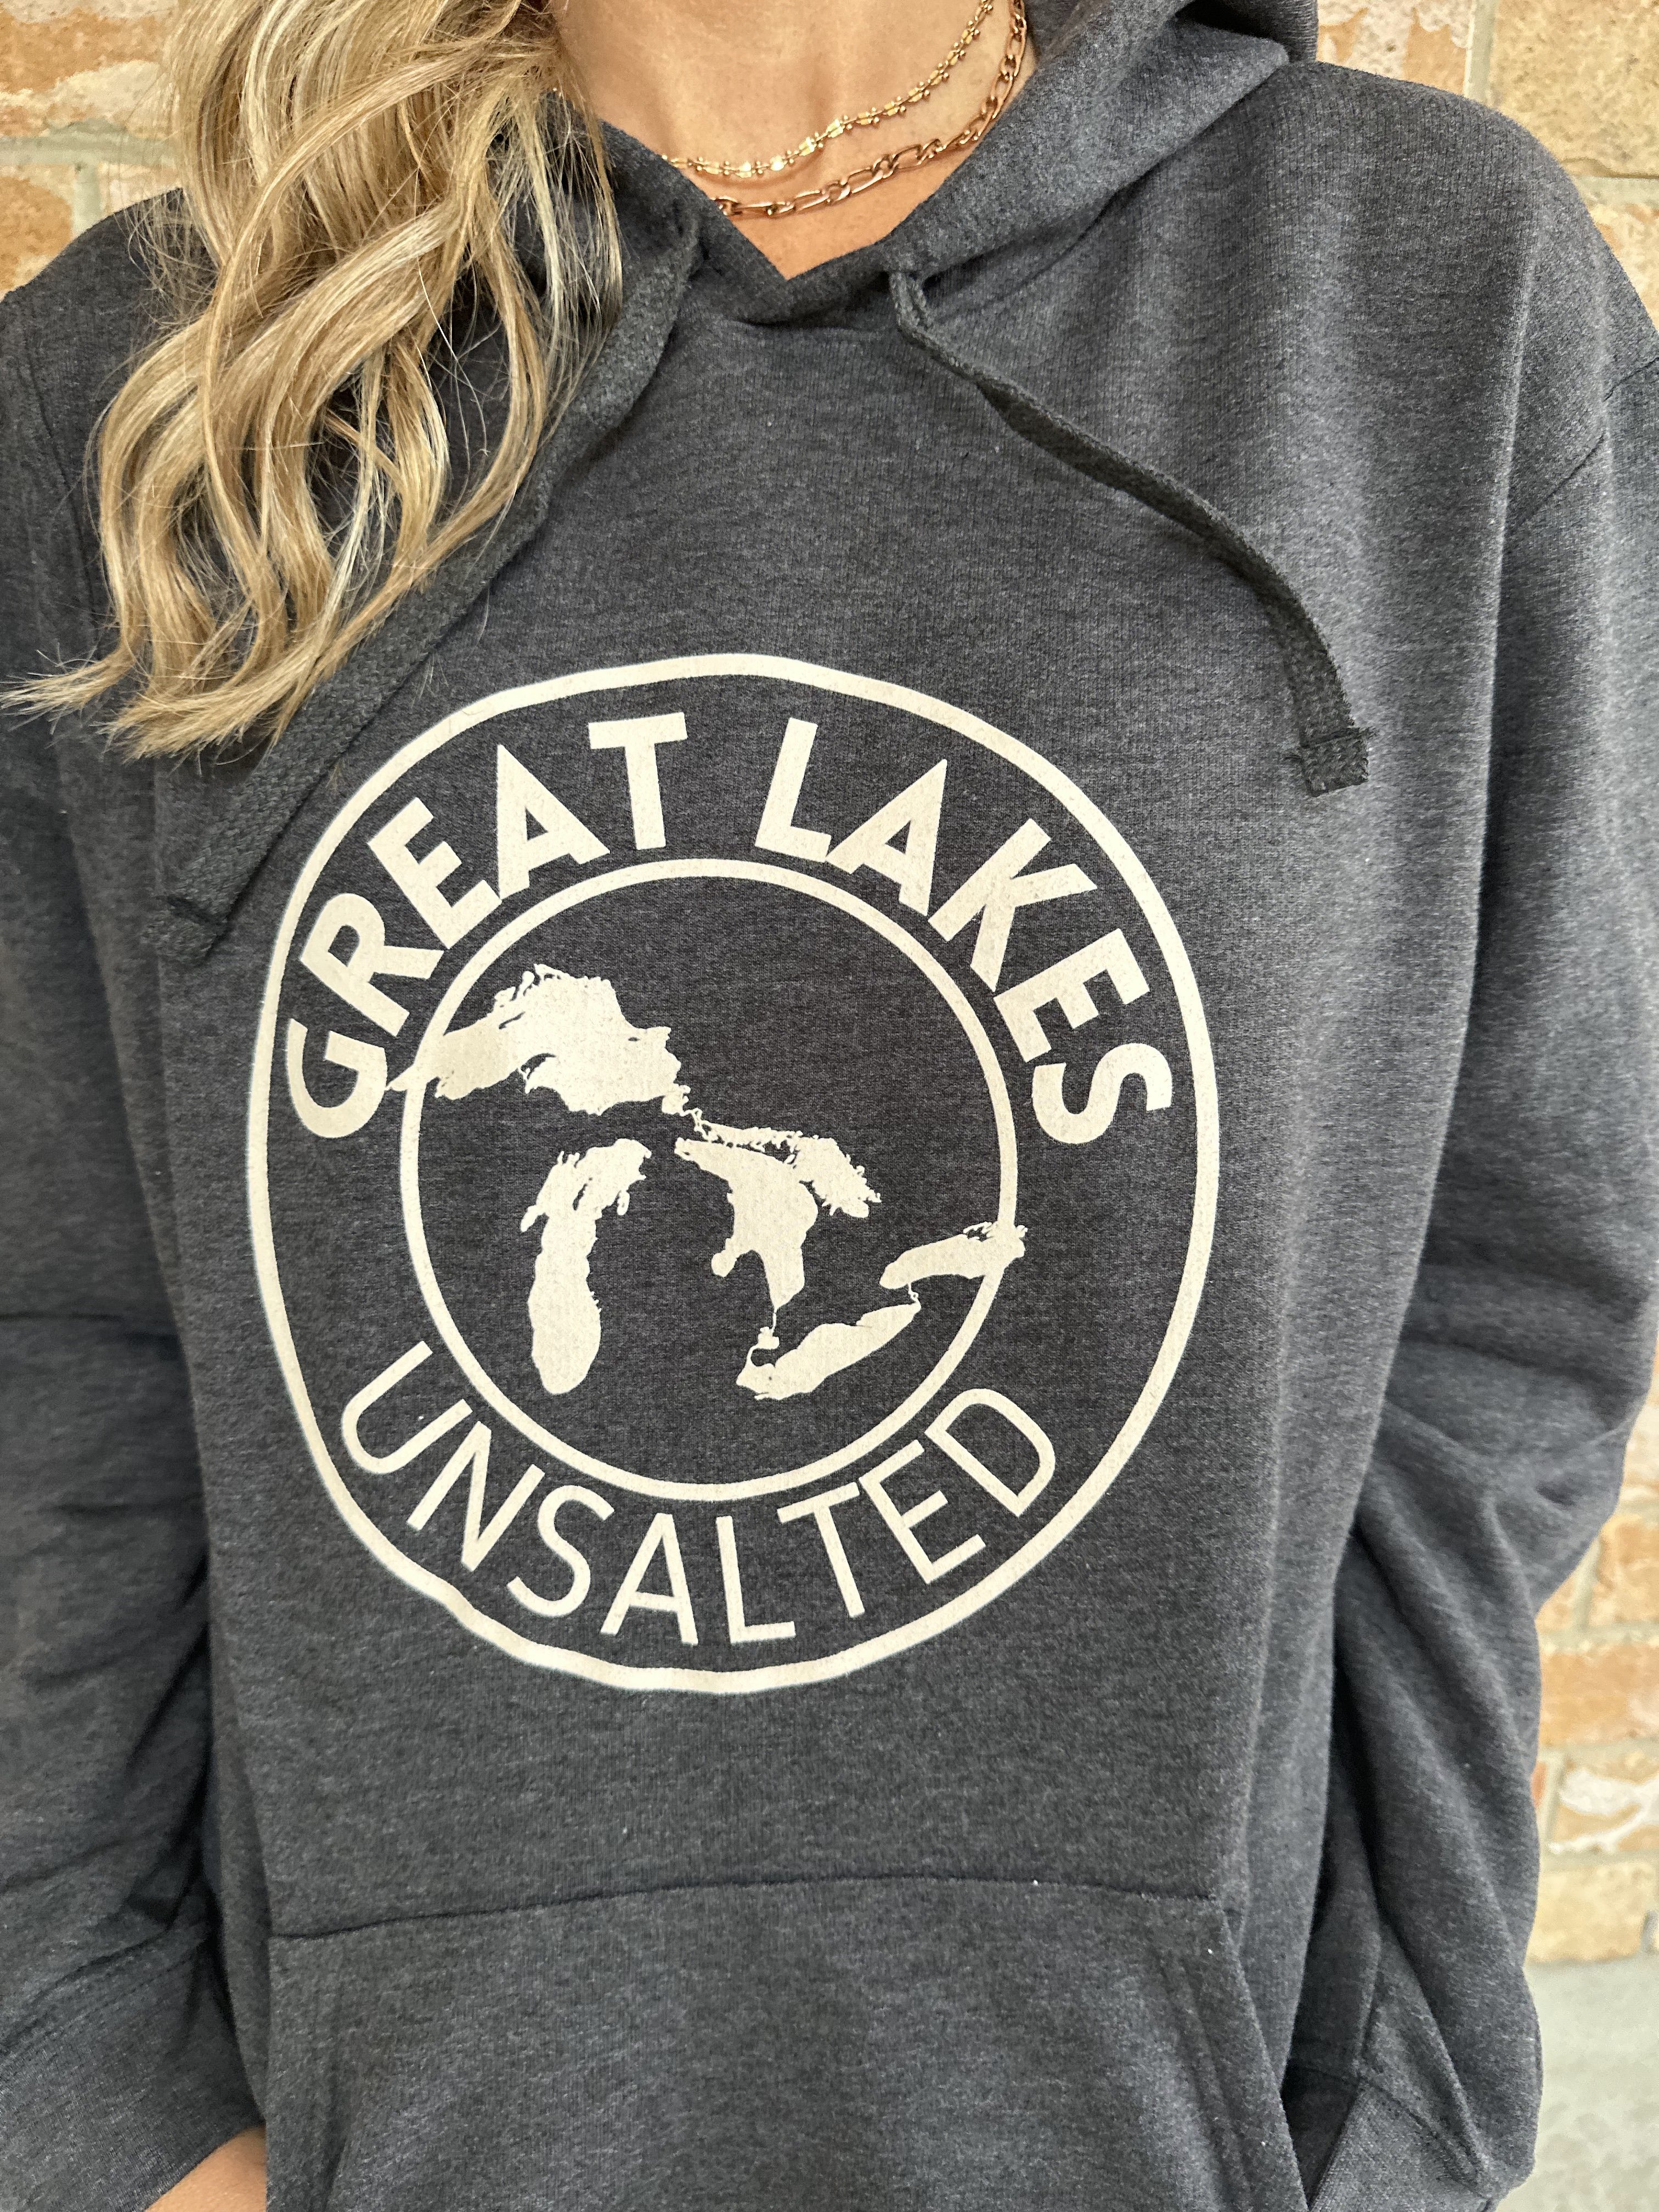 "GREAT LAKES" UNISEX HOODY